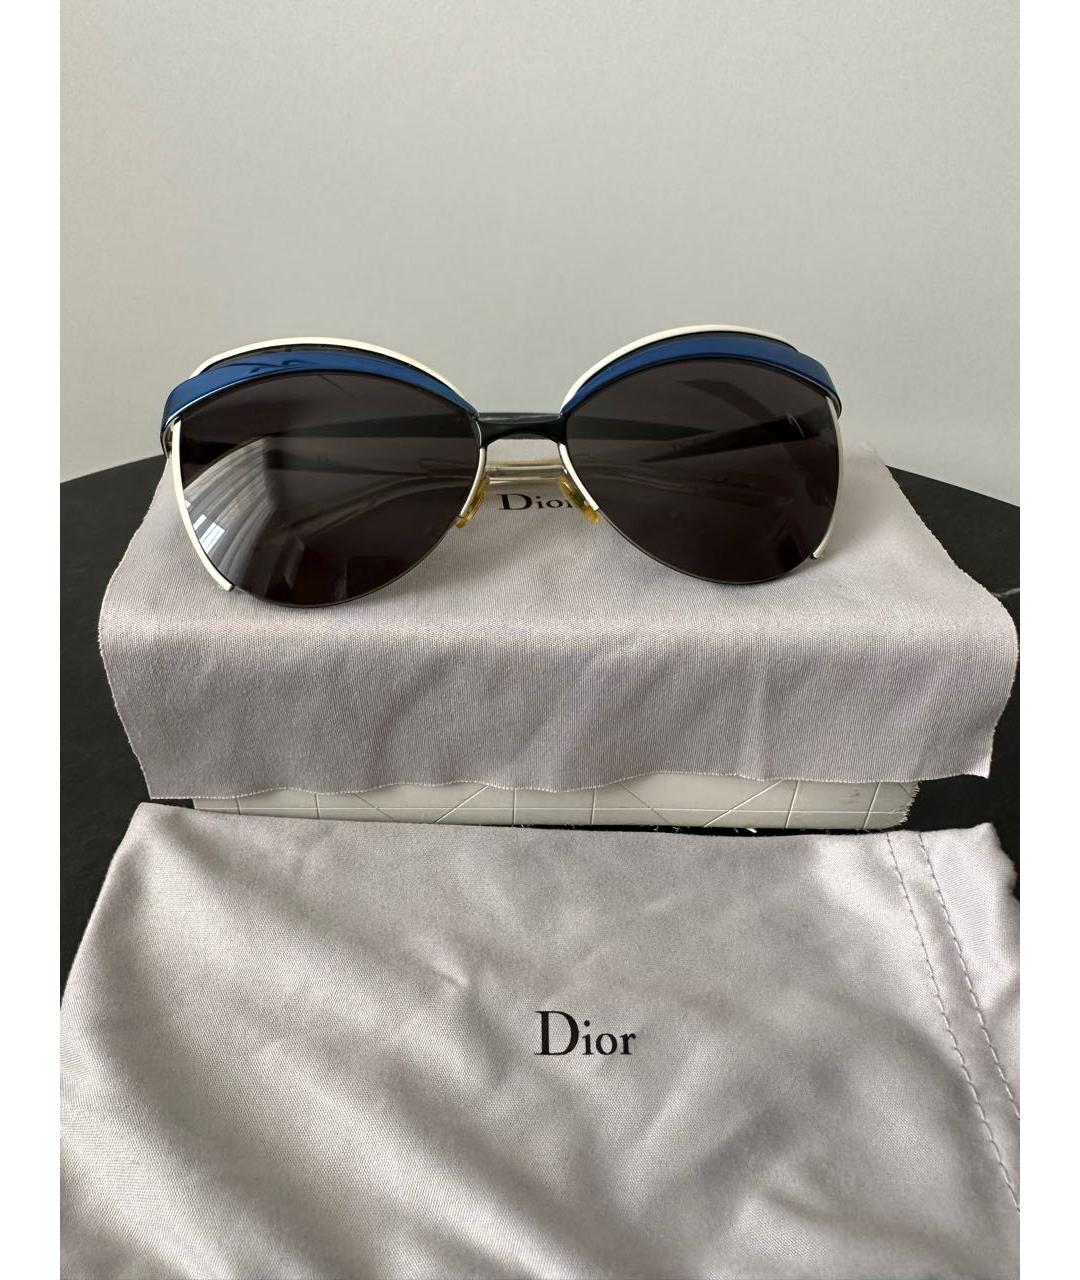 CHRISTIAN DIOR PRE-OWNED Синие металлические солнцезащитные очки, фото 2